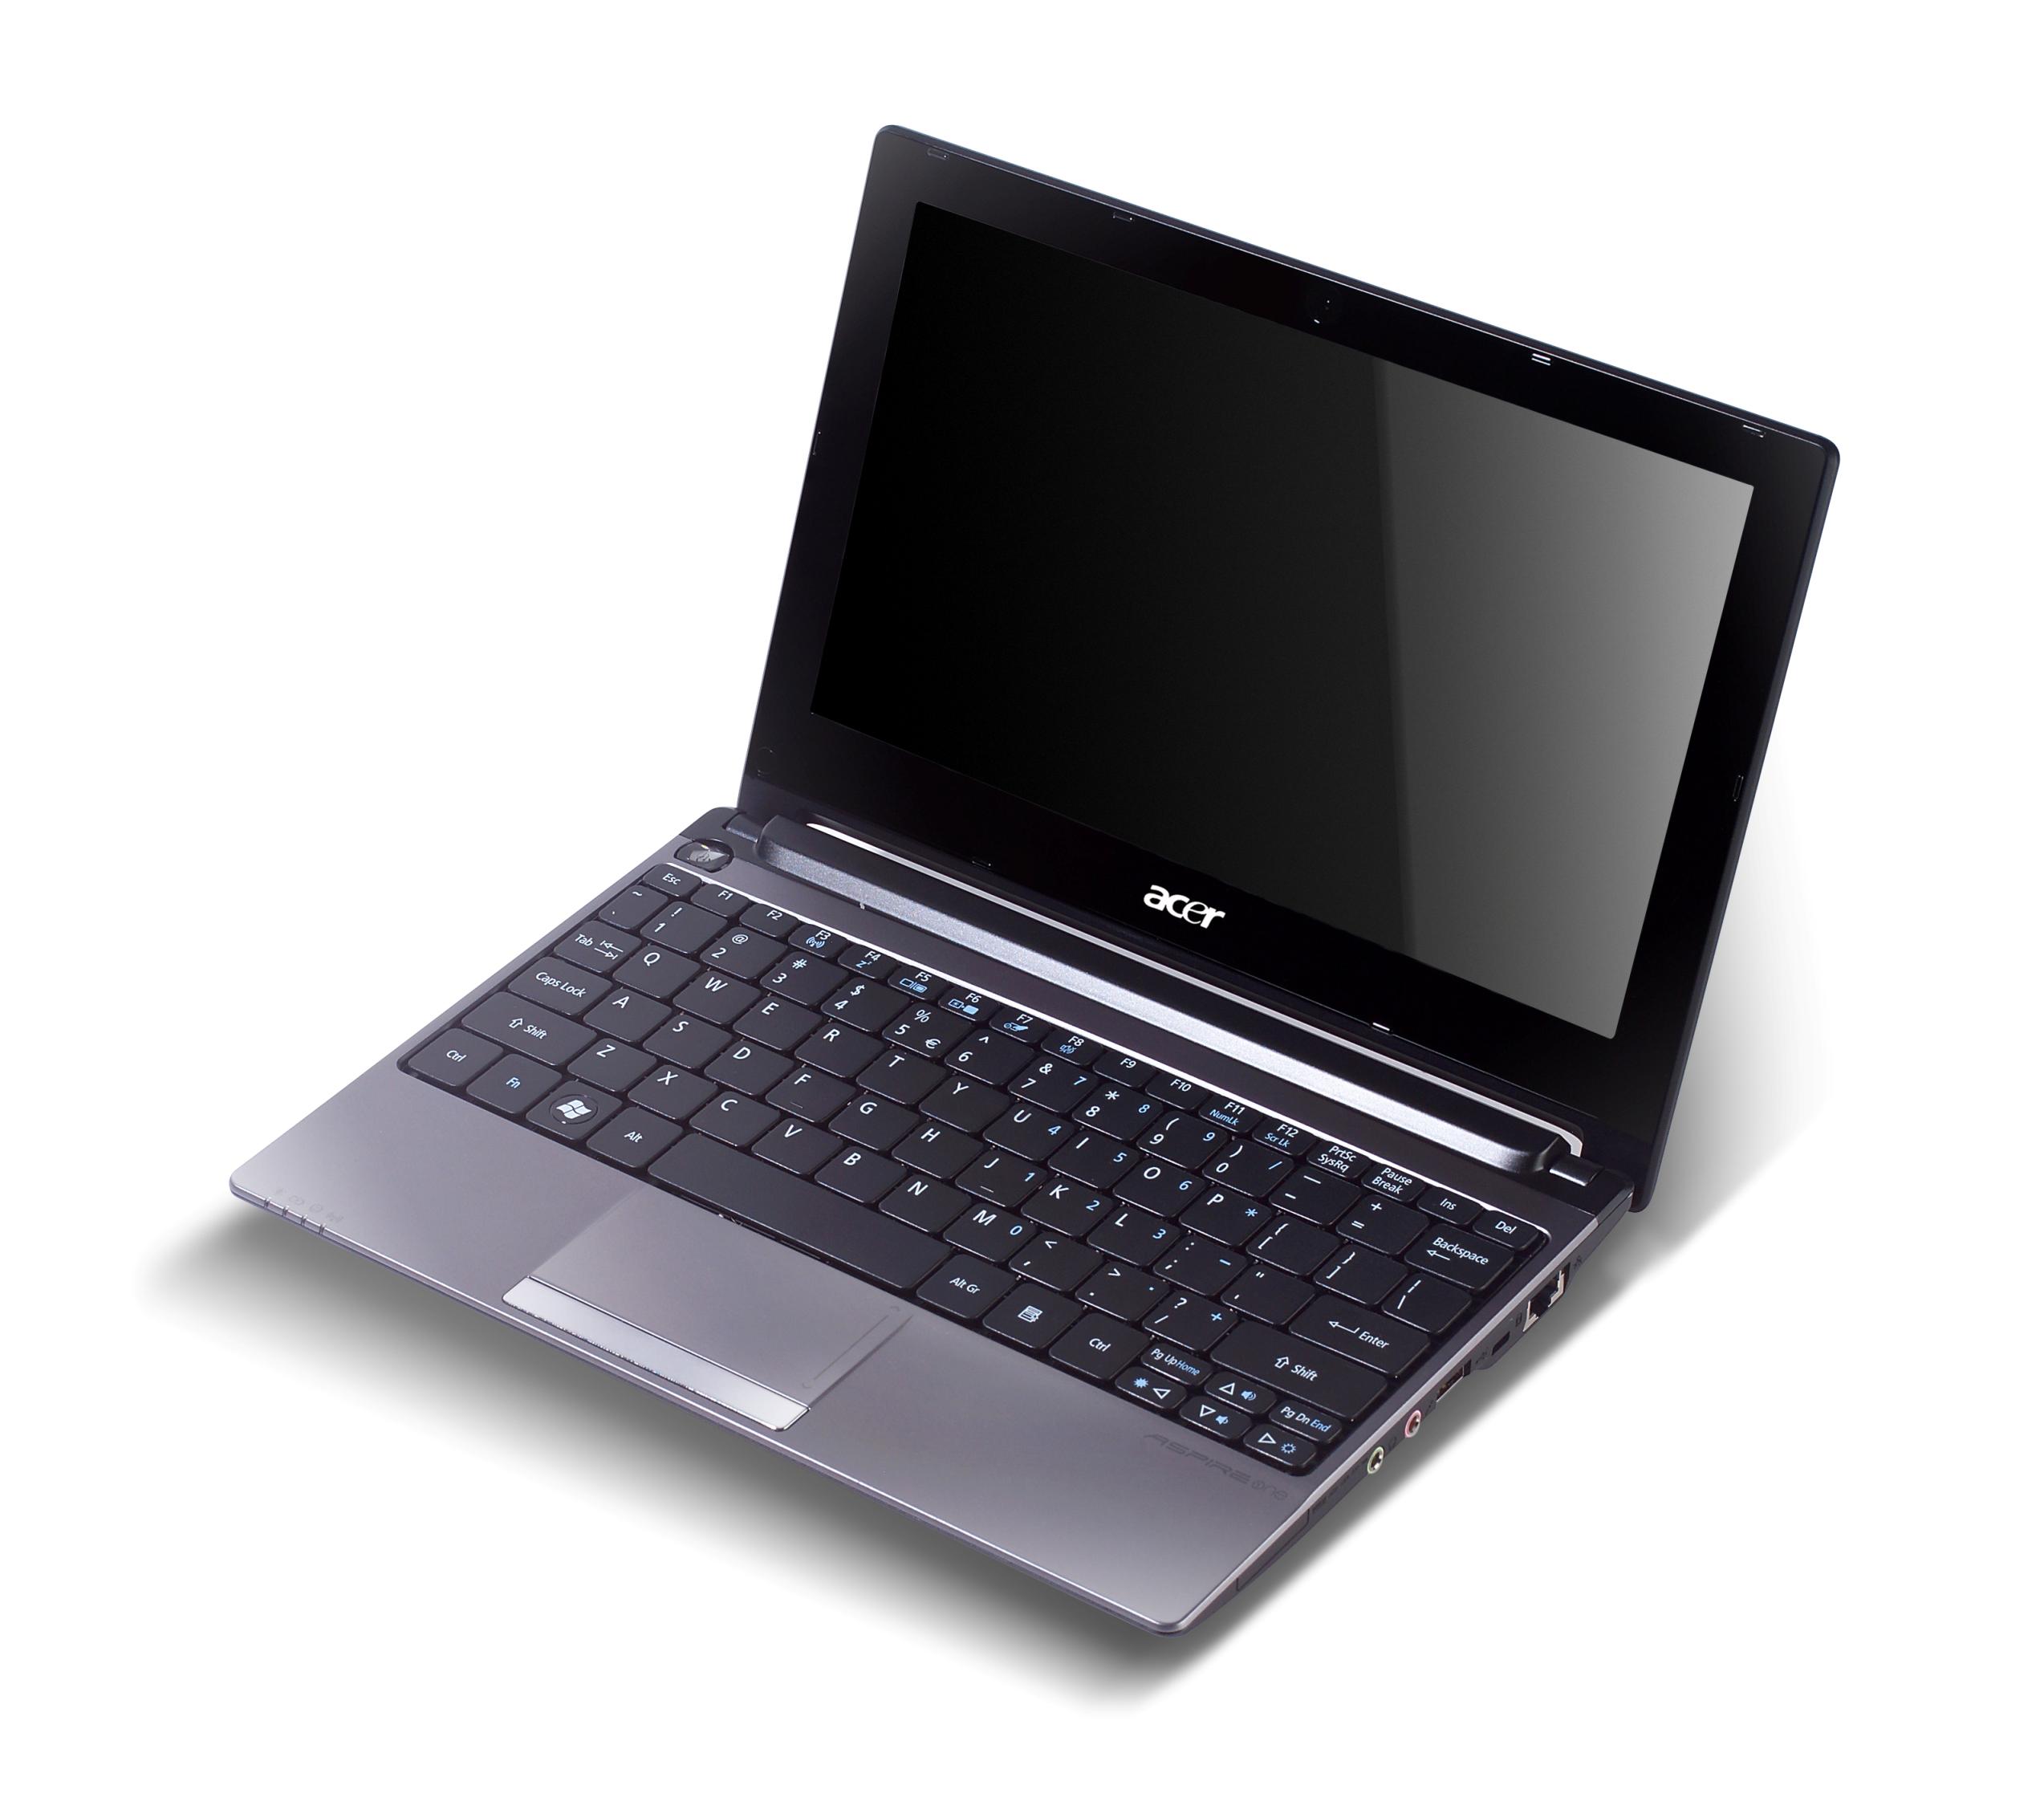 Acer Aspire One D260 Il Successore Del Modello D250